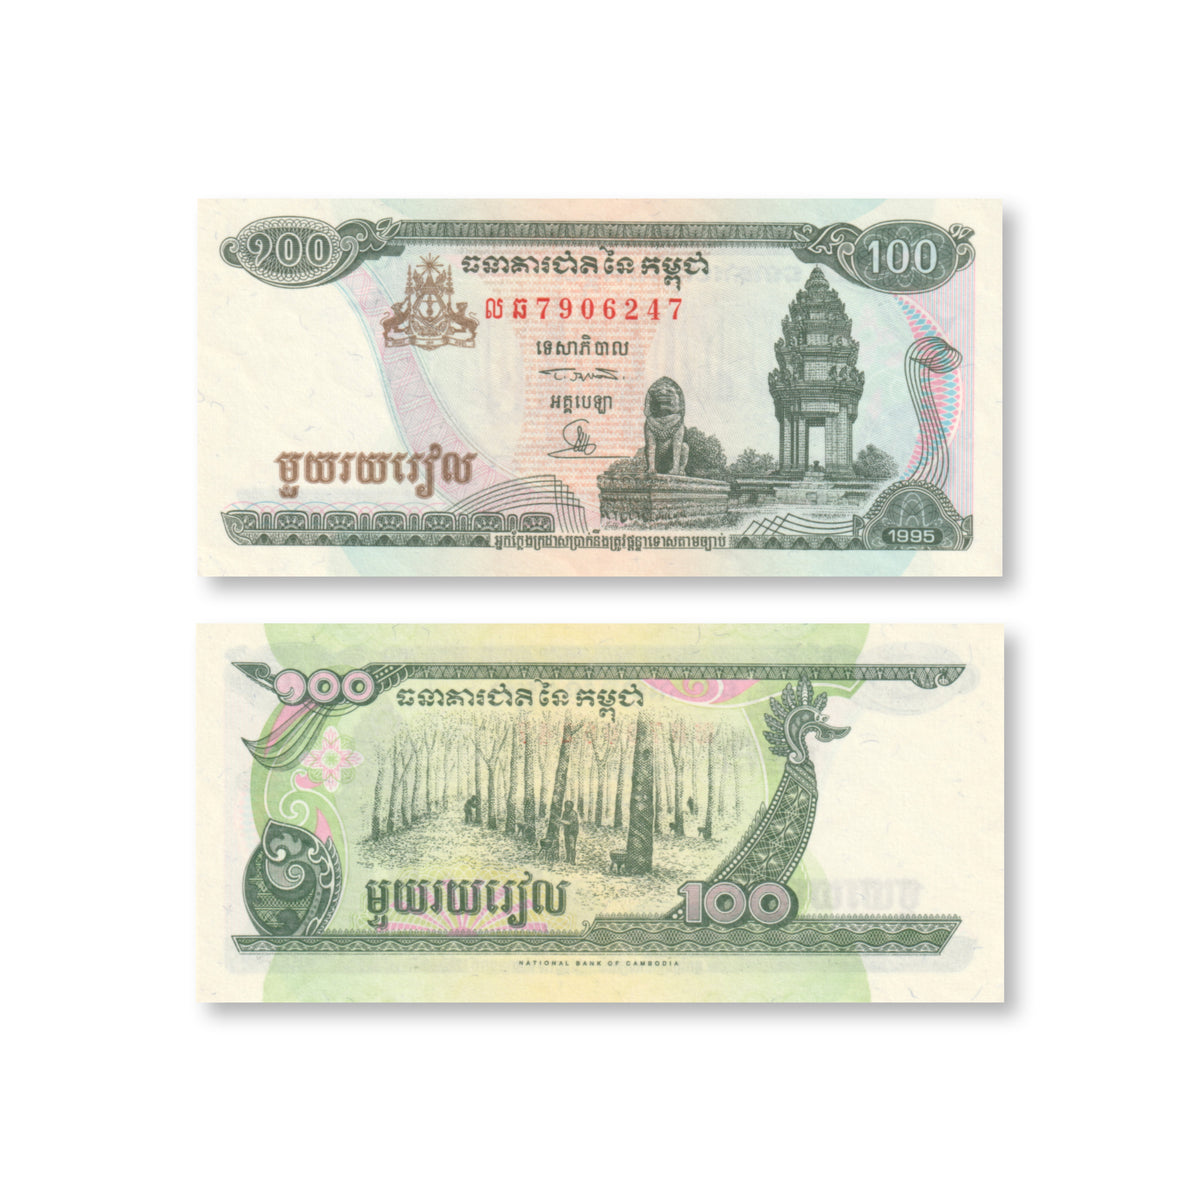 Cambodia 100 Riels, 1995, B404a, P41a, UNC